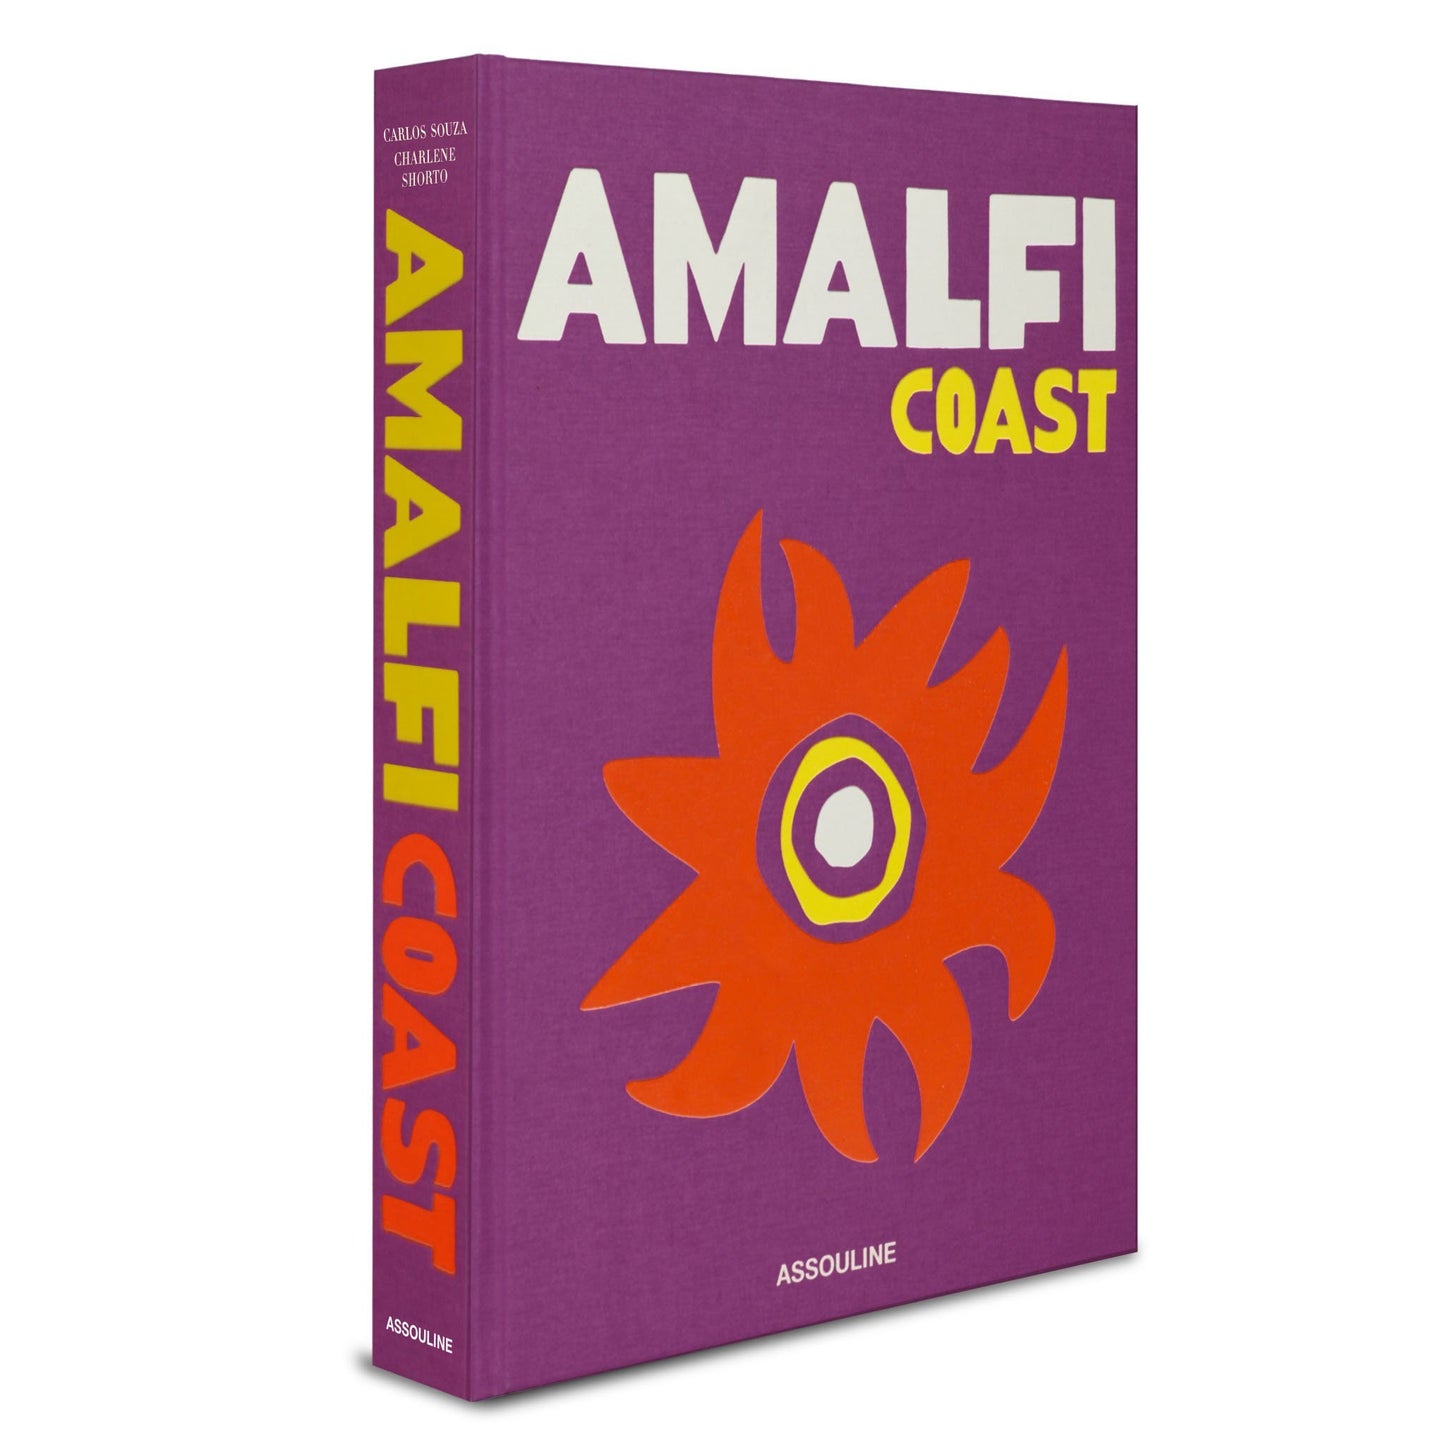 Buch über die Amalfiküste